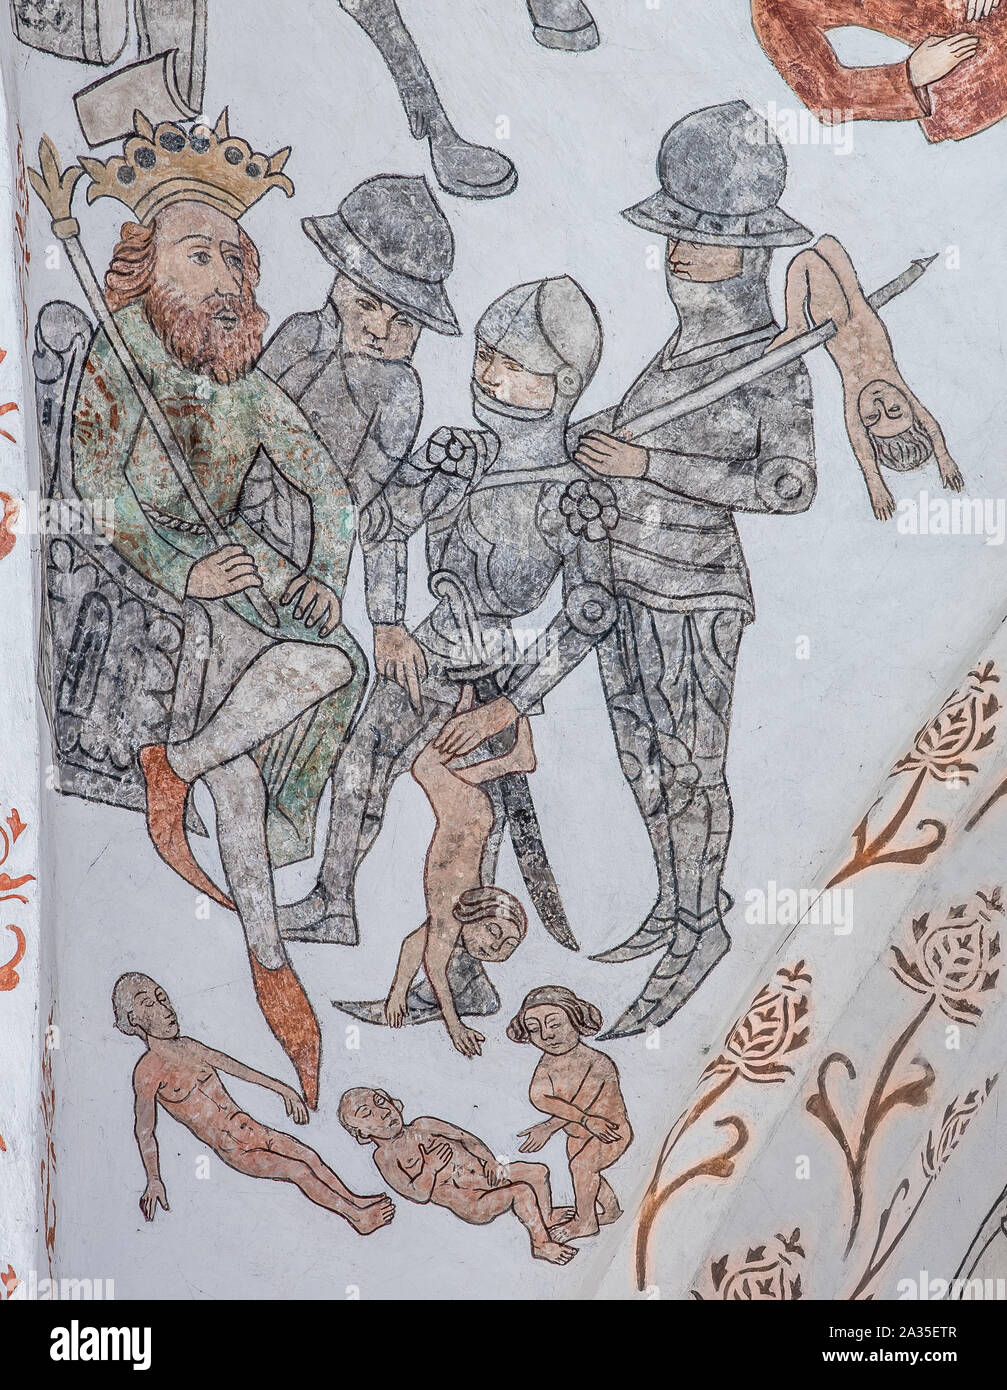 Mord der unschuldigen Kinder von Betlehem, eine Wand - Malerei etwa ab dem Jahr 1500 in der Kirche St. Maria, Elsinore, Dänemark, 14. Mai 2019 Stockfoto